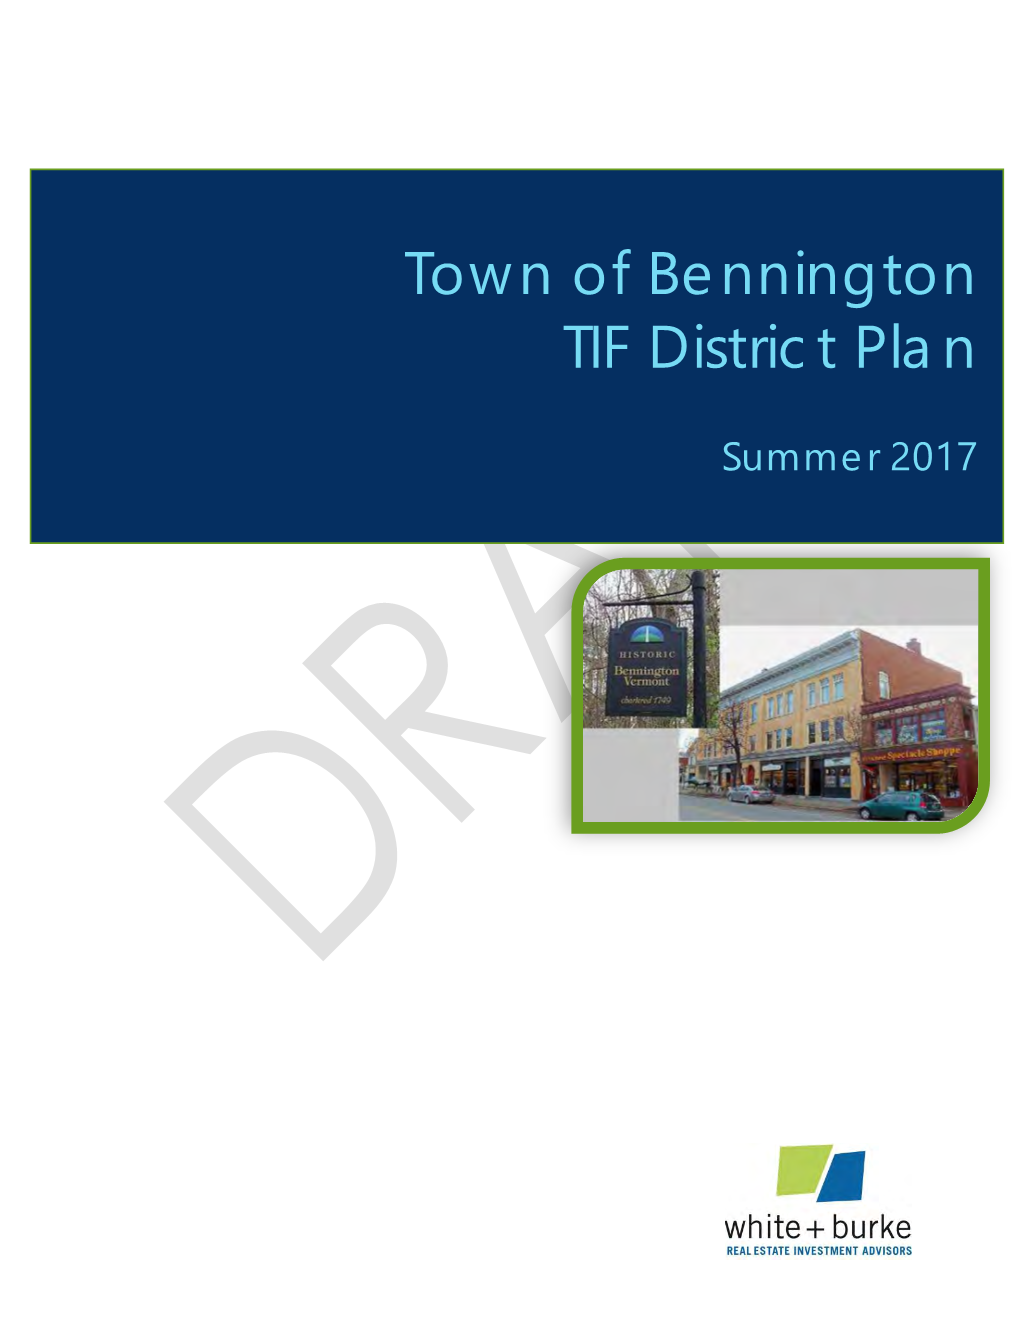 Town of Bennington TIF District Plan